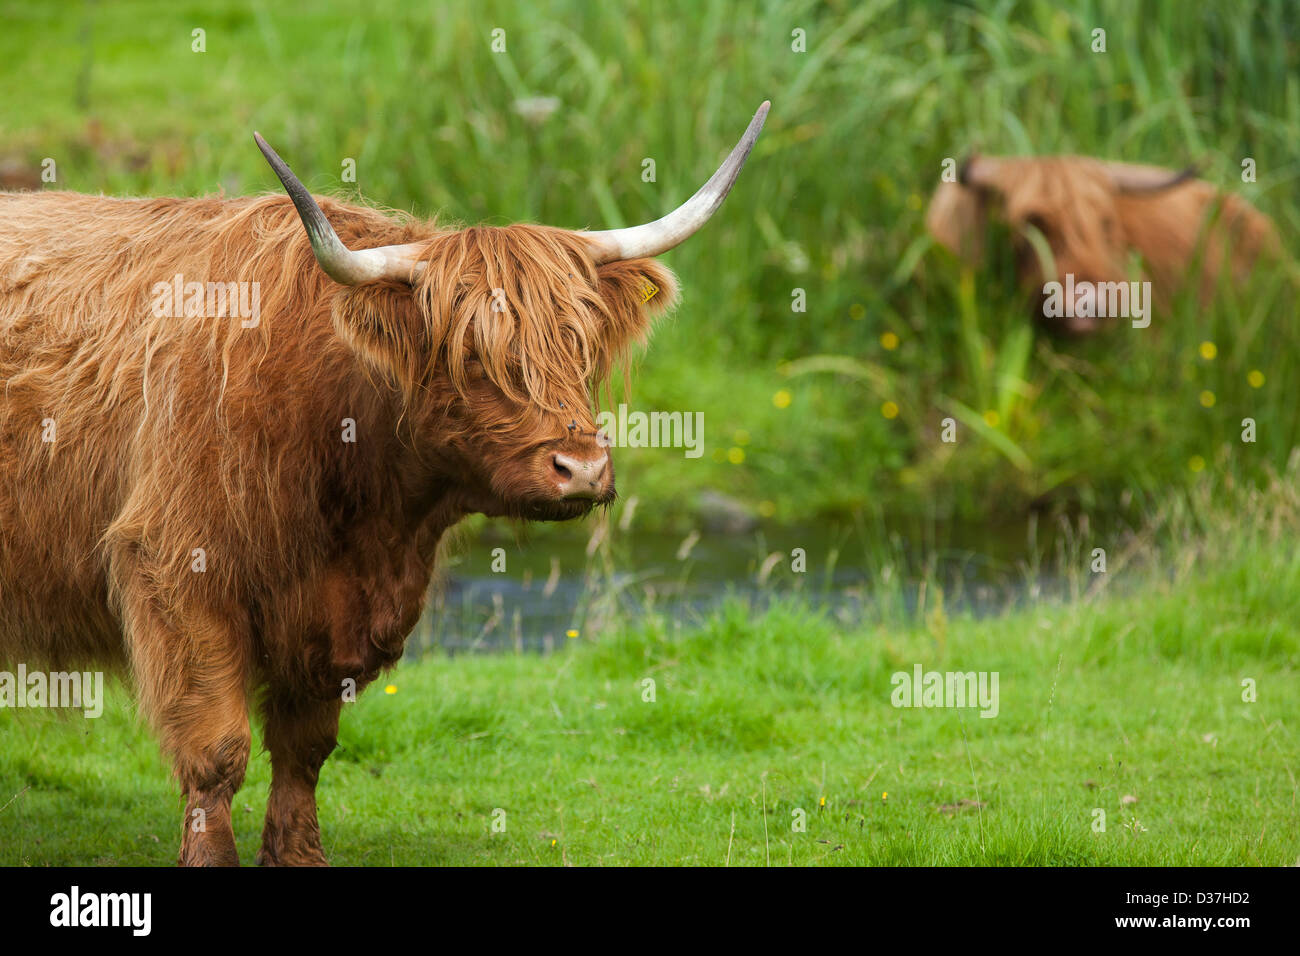 Un portrait d'un ou de vaches Highland cattle ou Kyloe debout dans une rivière sous un arbre dans les Highlands écossais Banque D'Images